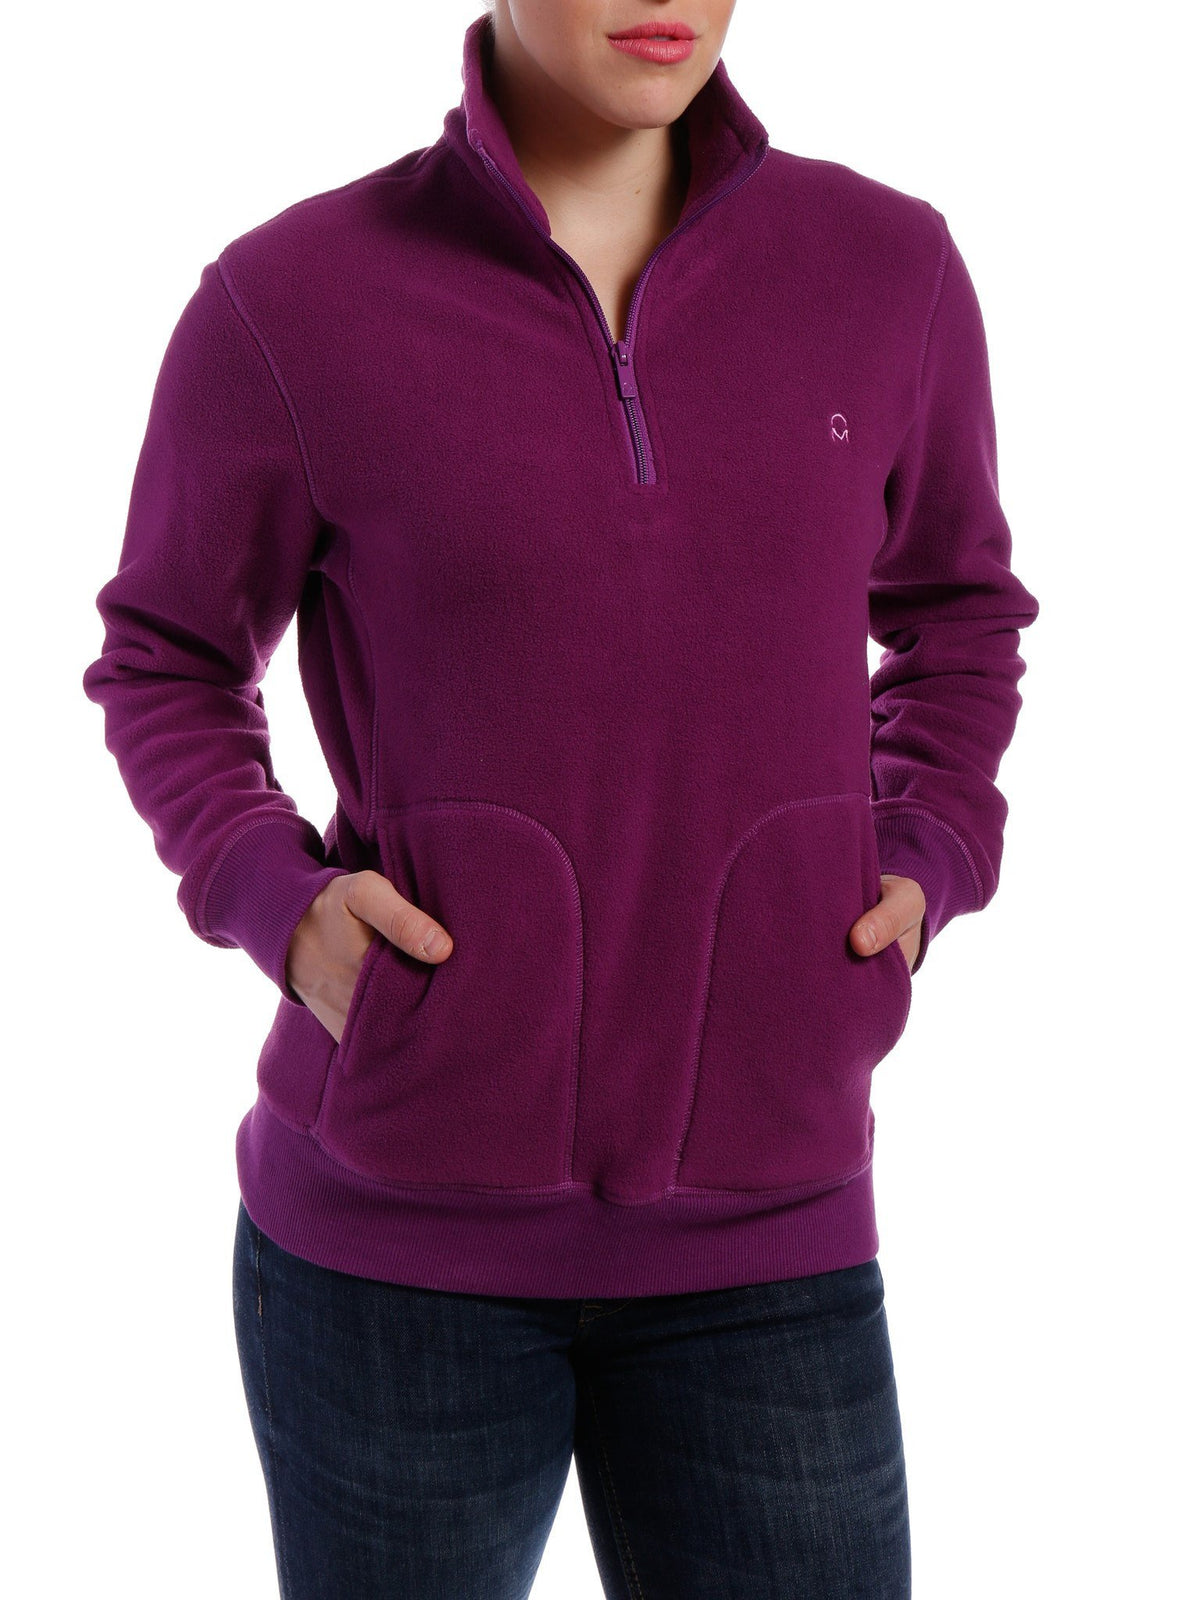 Women's Soft Fleece Half-Zip Pullover - Purple